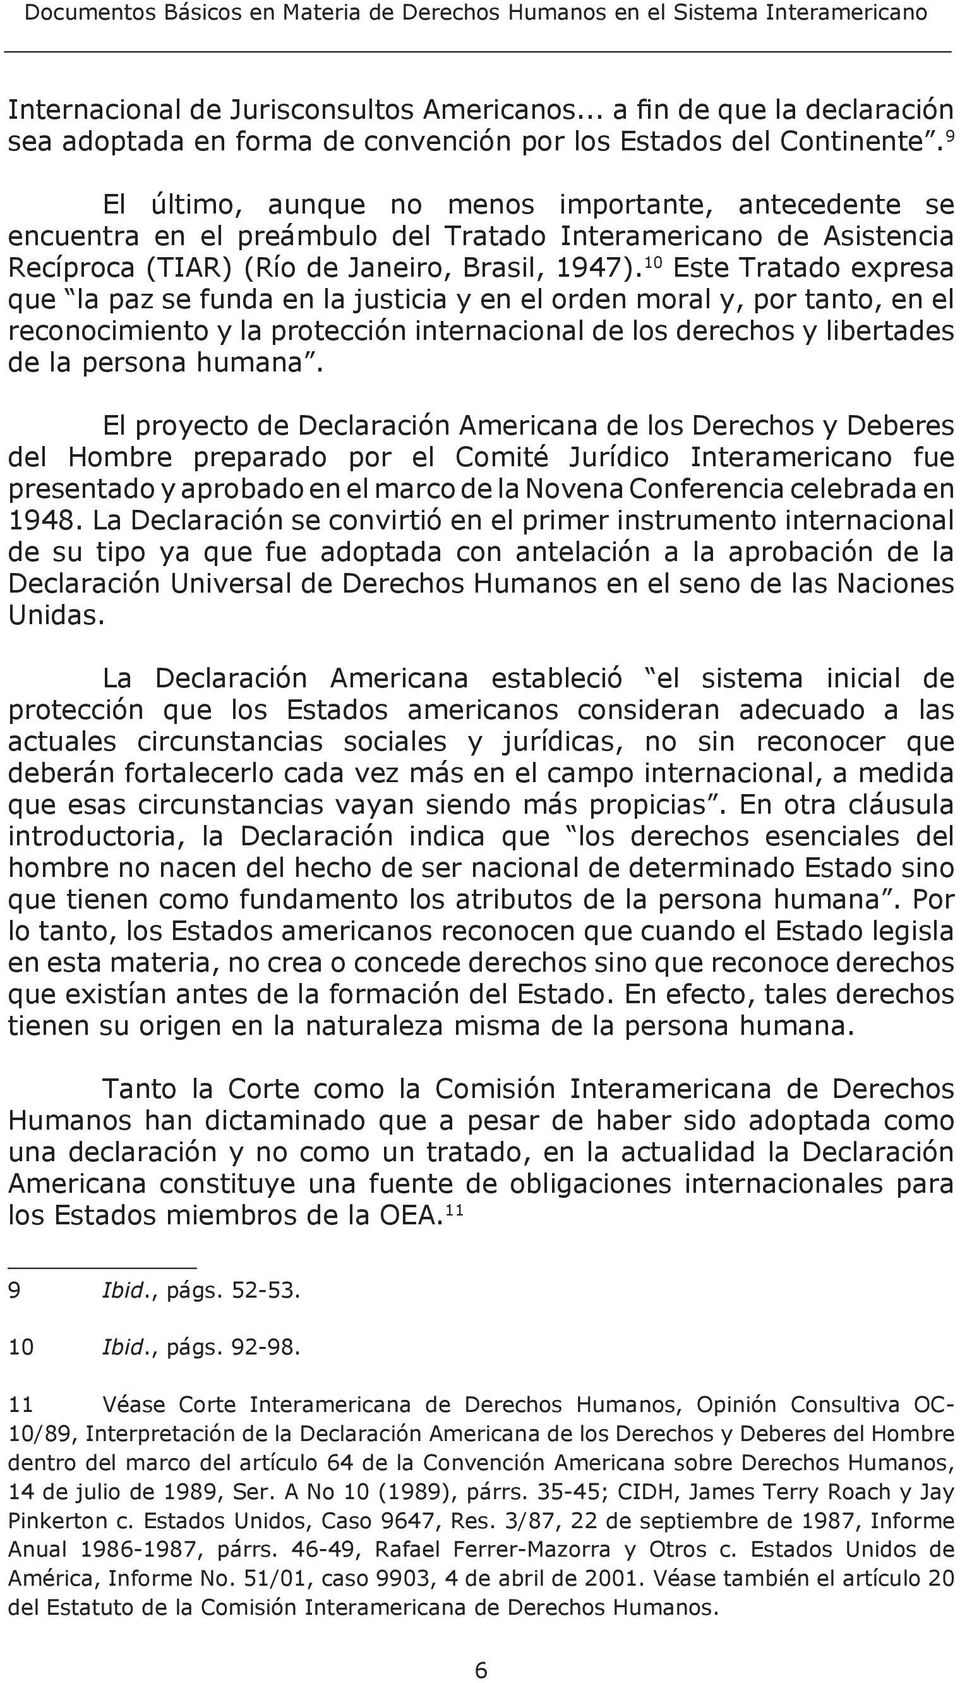 9 El último, aunque no menos importante, antecedente se encuentra en el preámbulo del Tratado Interamericano de Asistencia Recíproca (TIAR) (Río de Janeiro, Brasil, 1947).